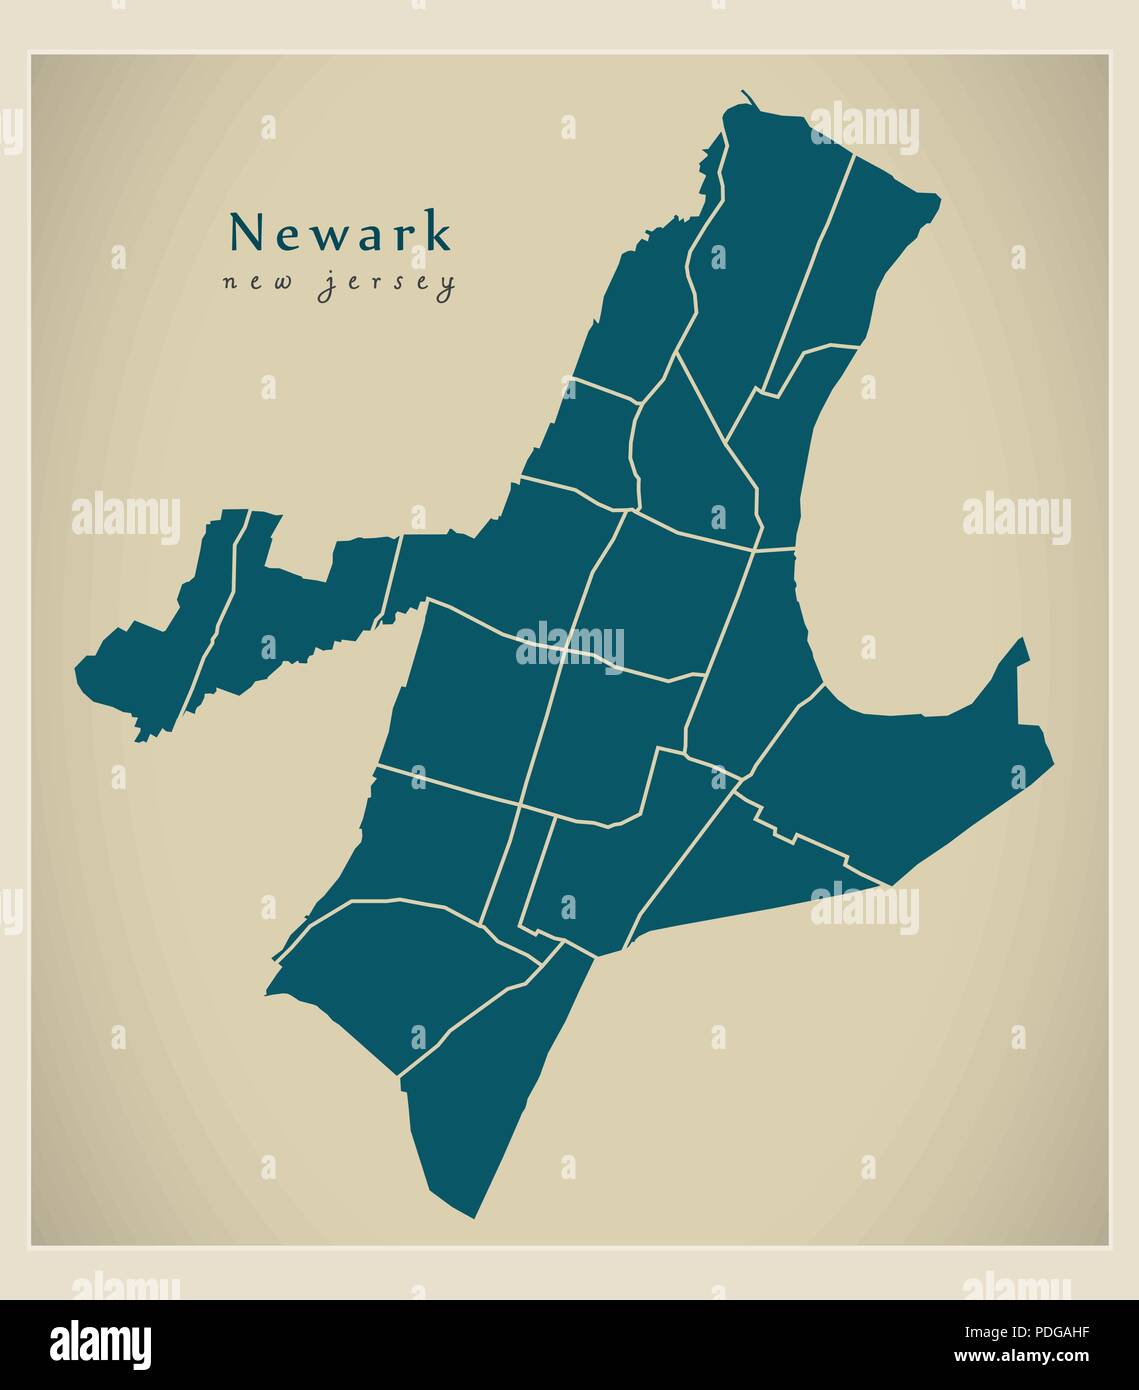 Città moderna mappa - Newark New Jersey città degli Stati Uniti con i quartieri Illustrazione Vettoriale